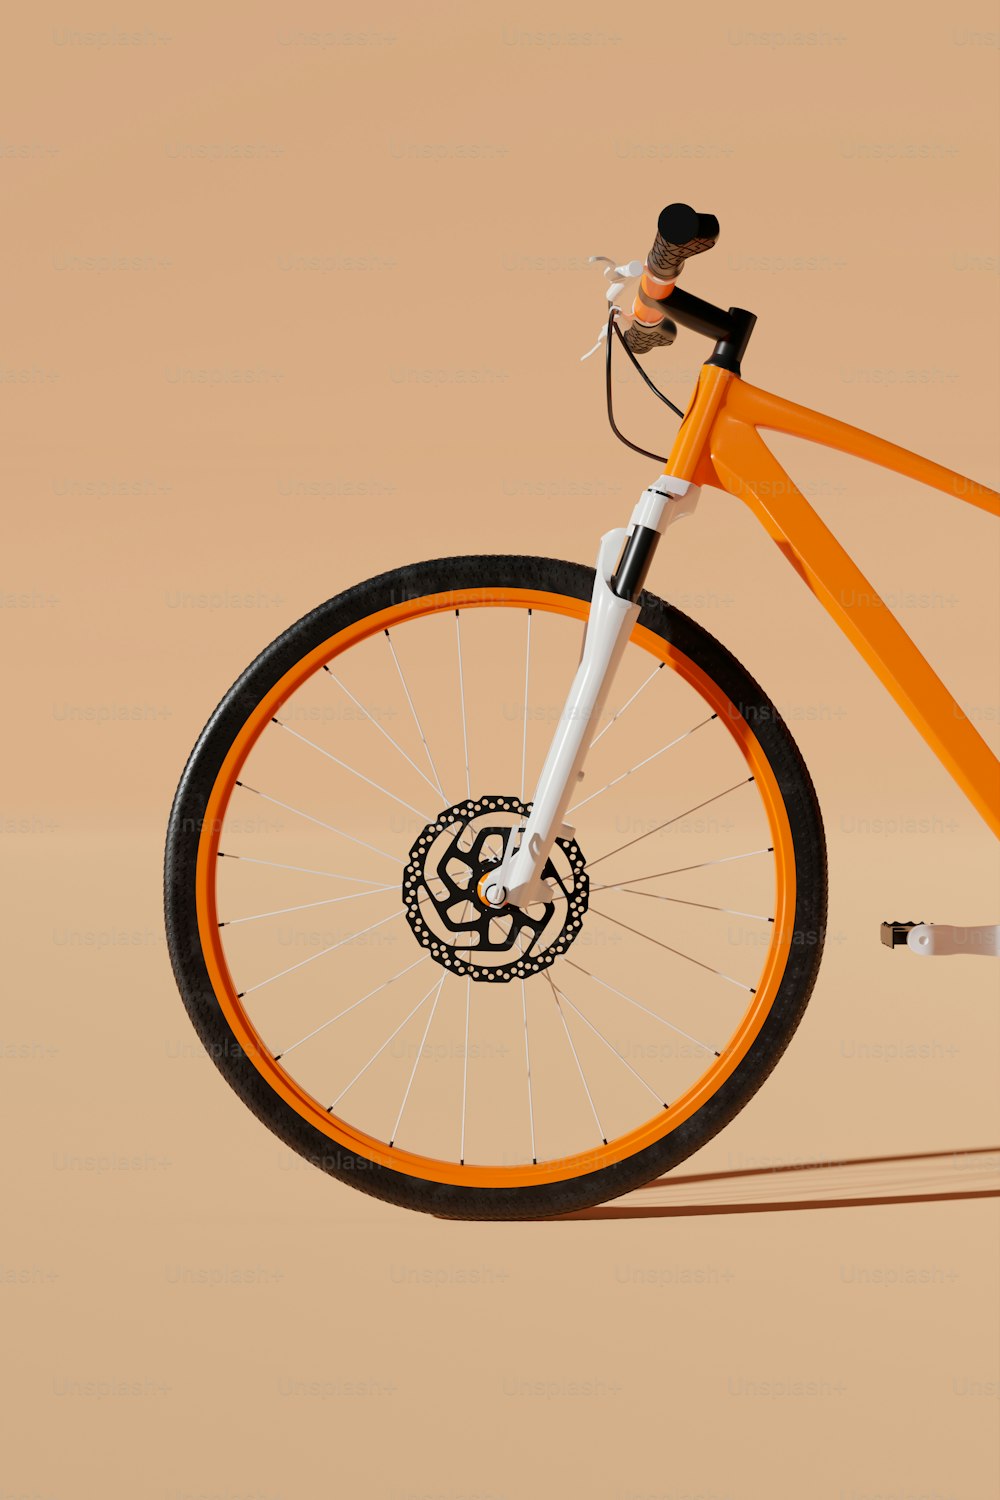 uma bicicleta laranja com um emblema preto e branco na roda dianteira